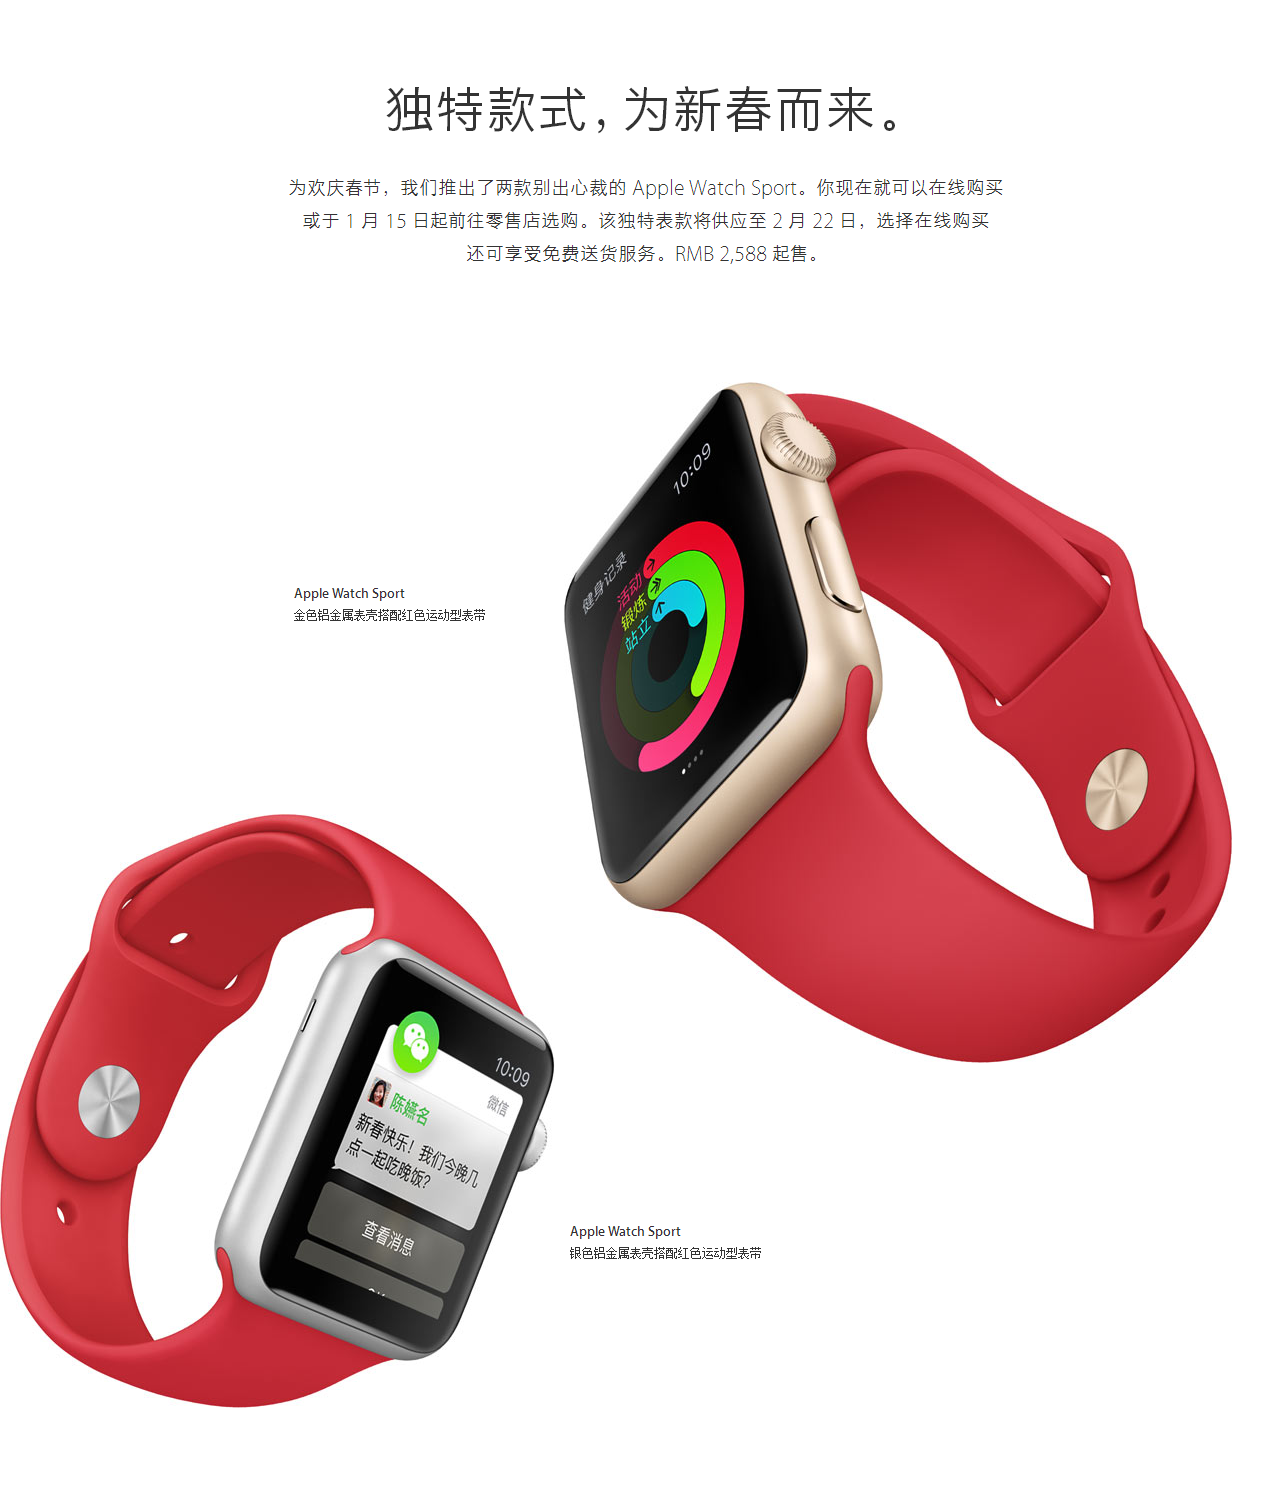 春节 – Apple Watch Sport – Apple (中国).png